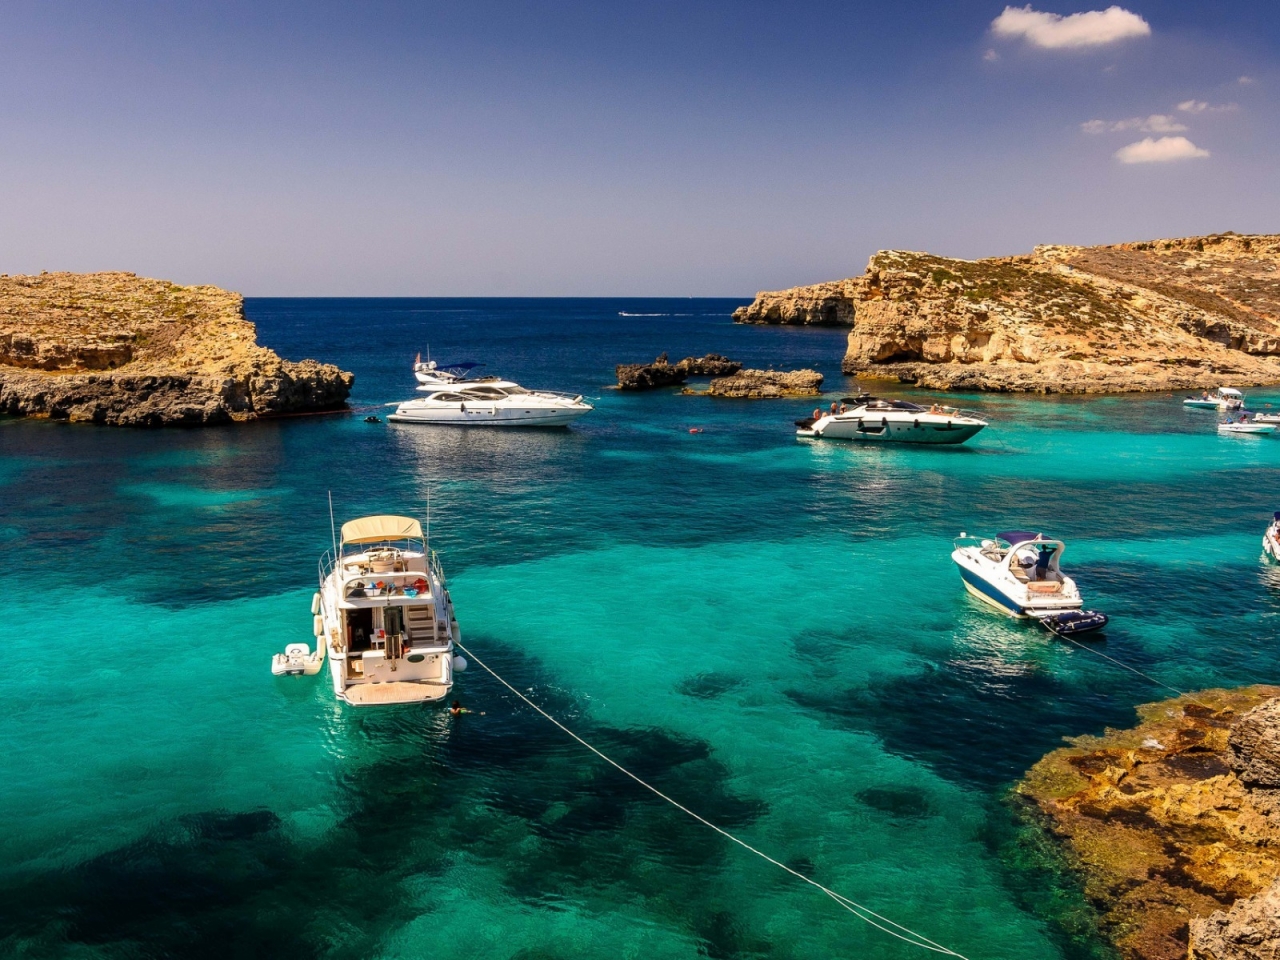 Malta Sea Corner for 1280 x 960 resolution